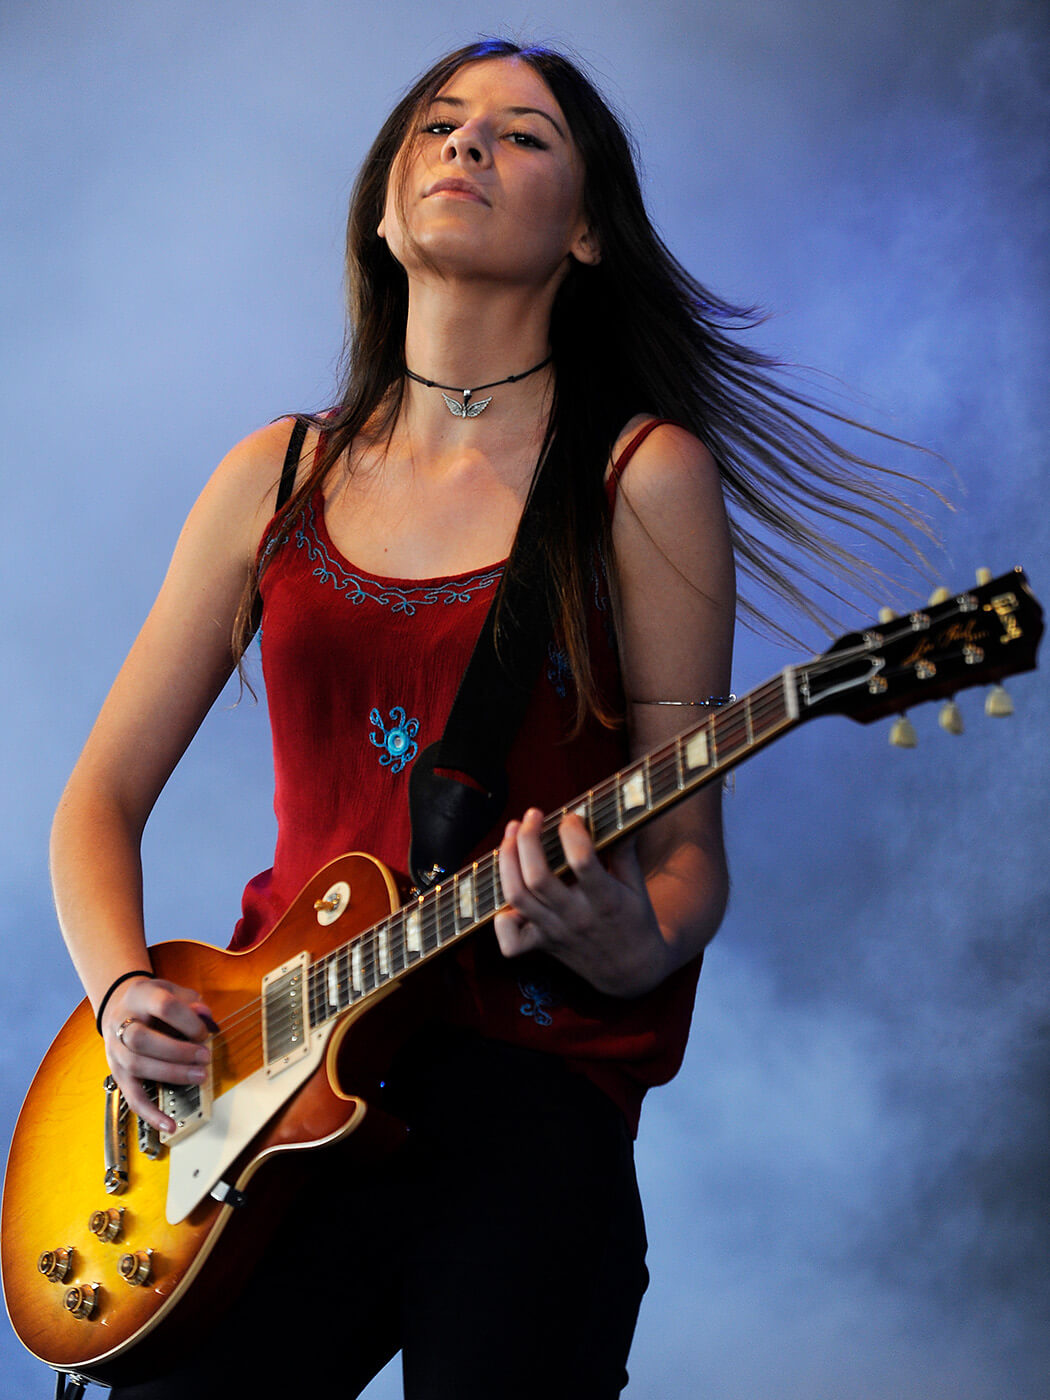 Hannah Findlay de Stonefield se apresenta no palco do Pyramid Rock Festival em 30 de dezembro de 2012, em Melbourne, Austrália.